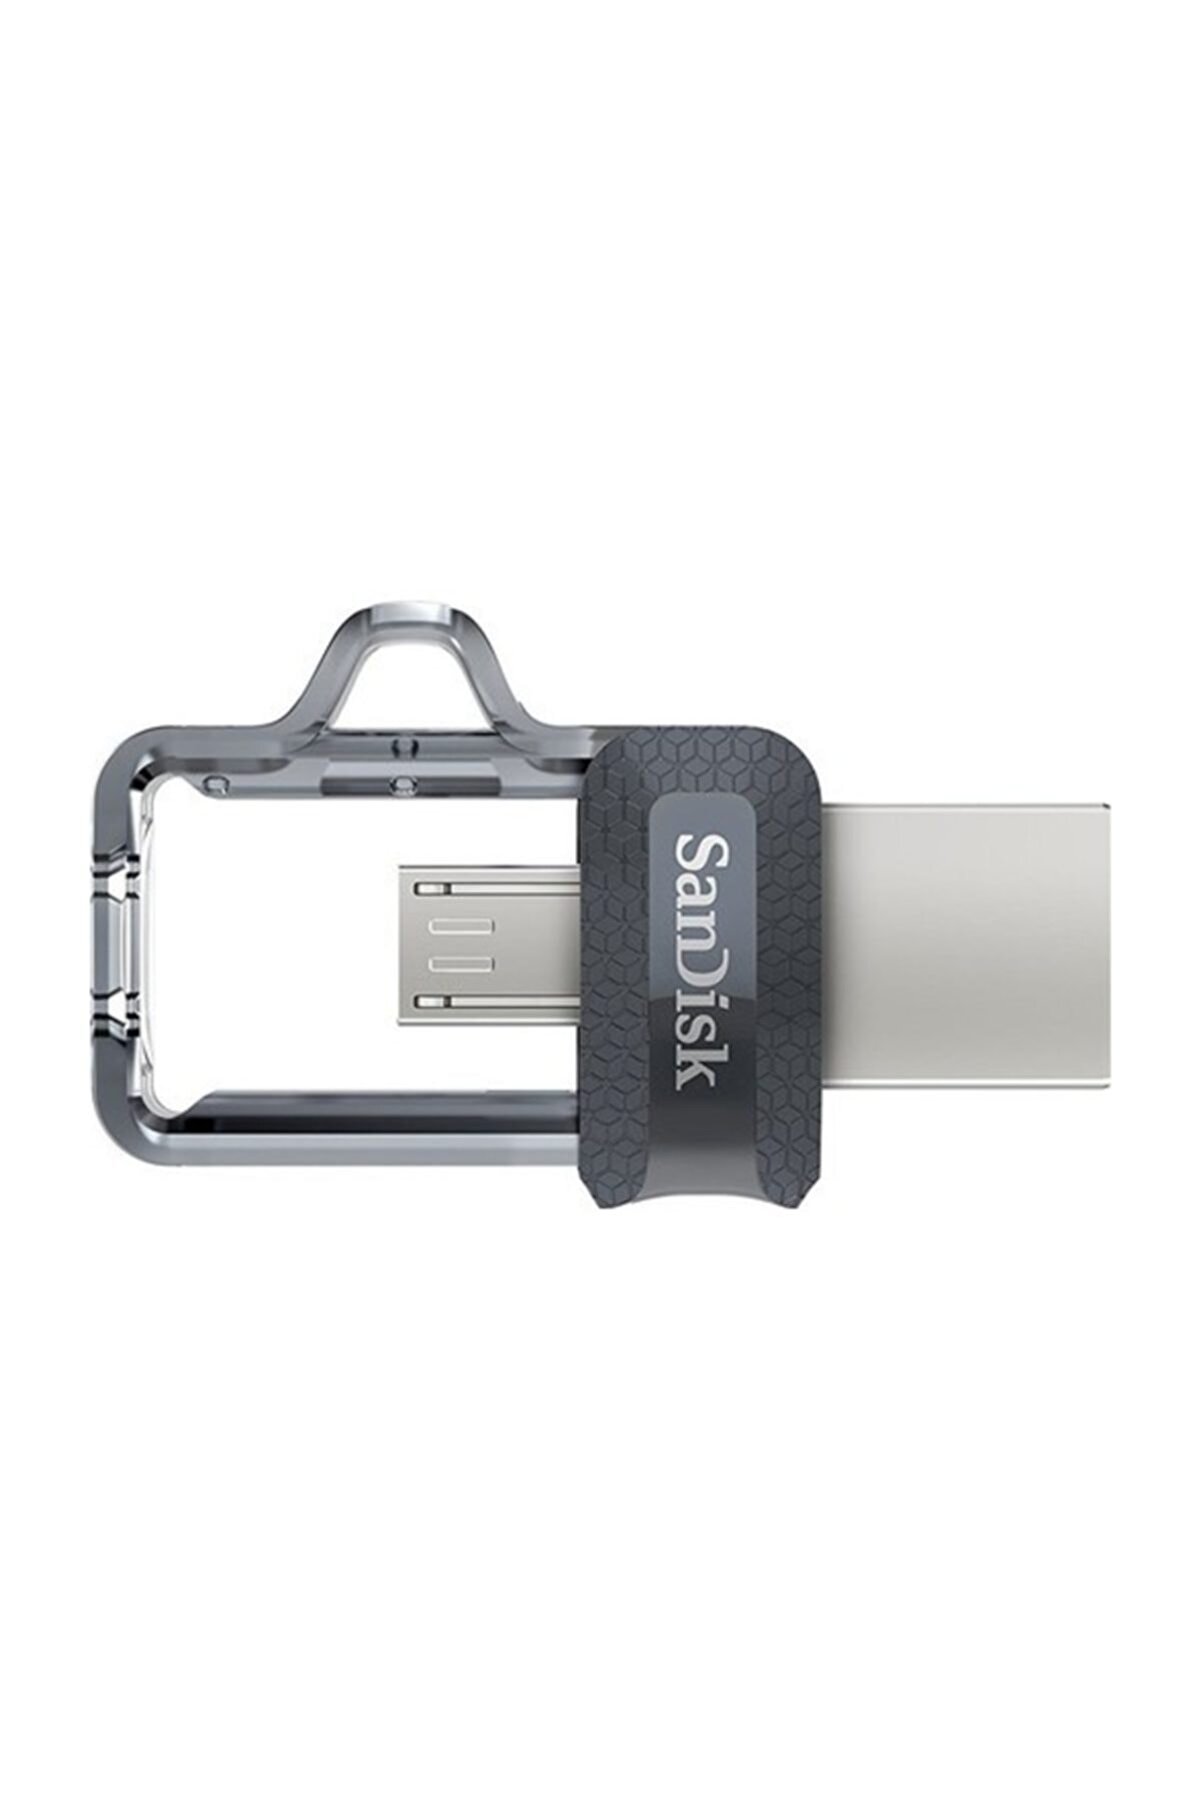 Sandisk Ultra Dual Drive USB 3.0 Bellek 64 GB SDDD3-064G-G46